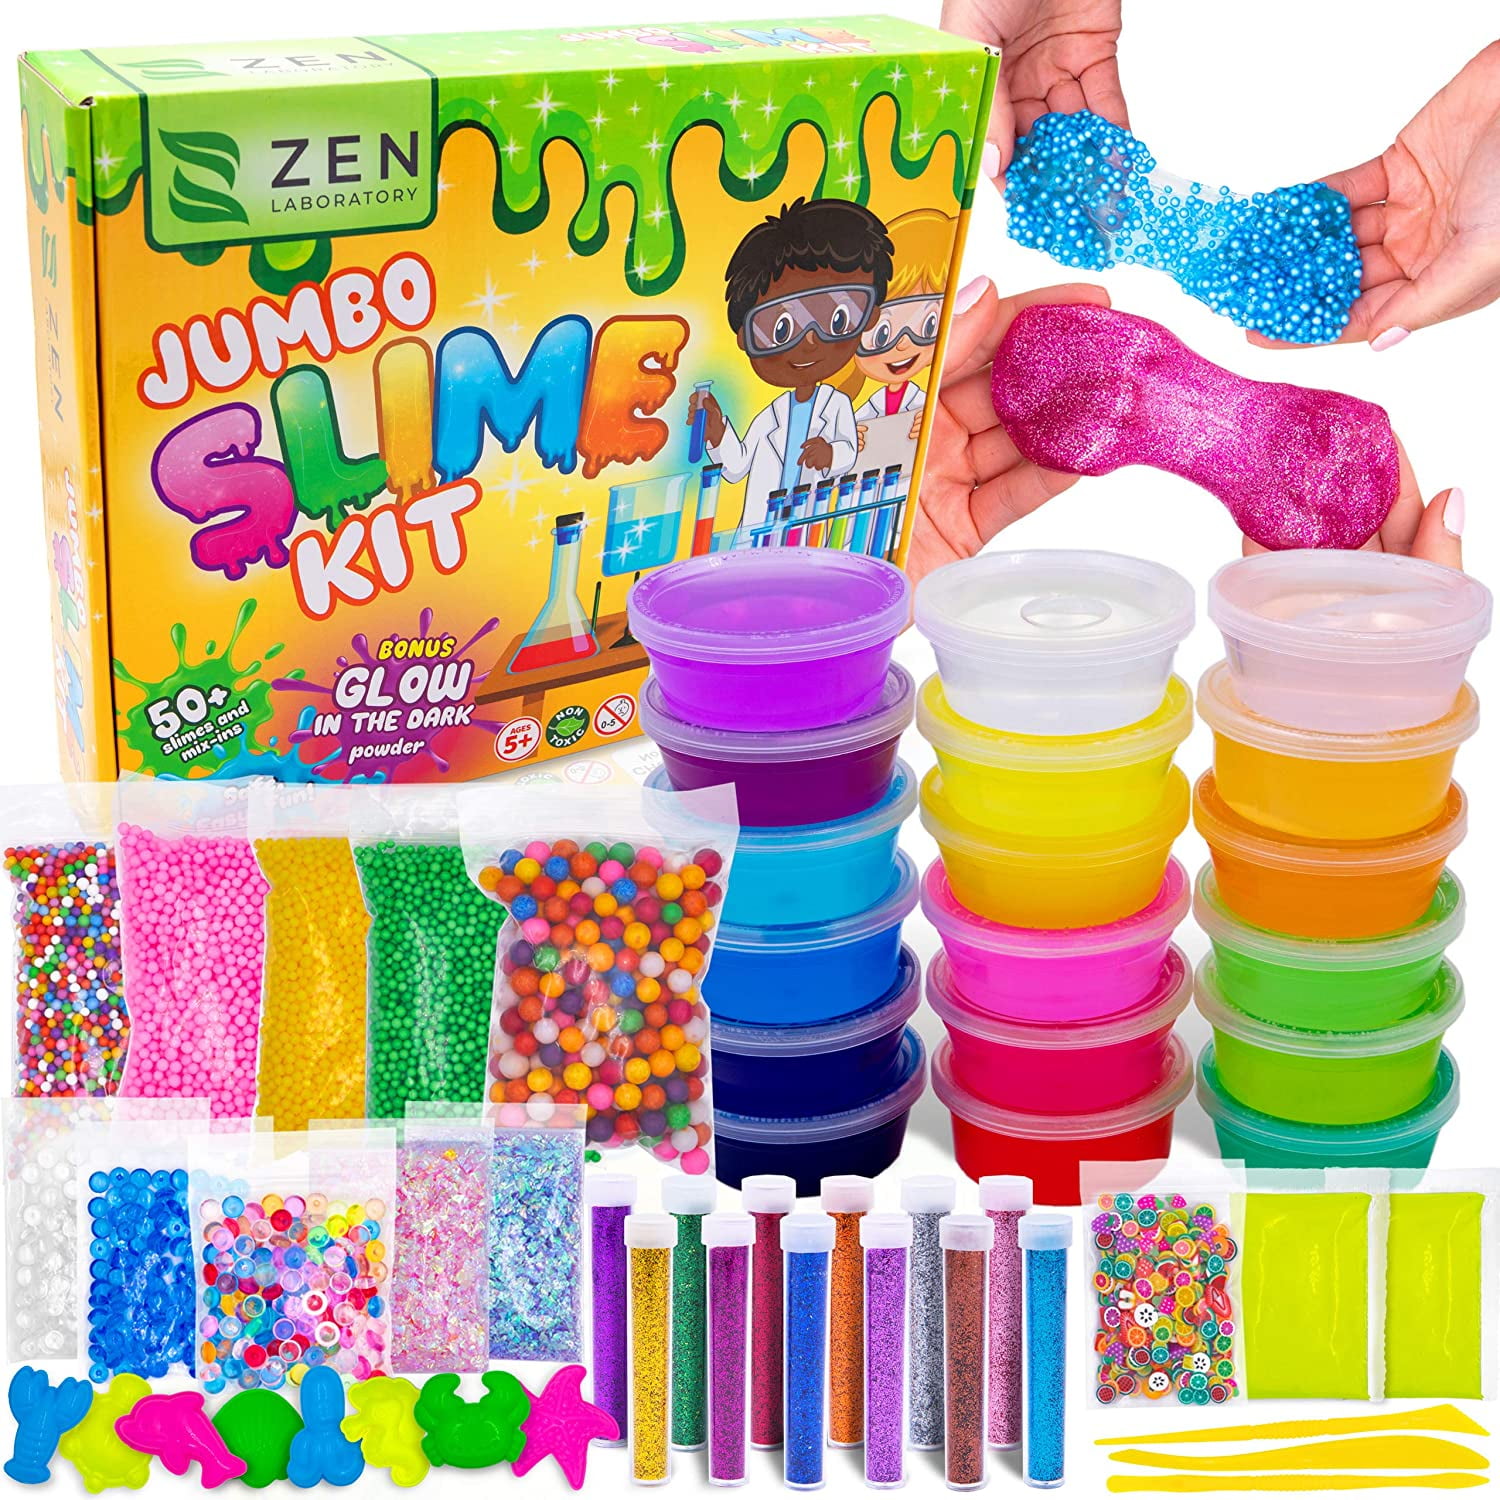 slime kits for girls